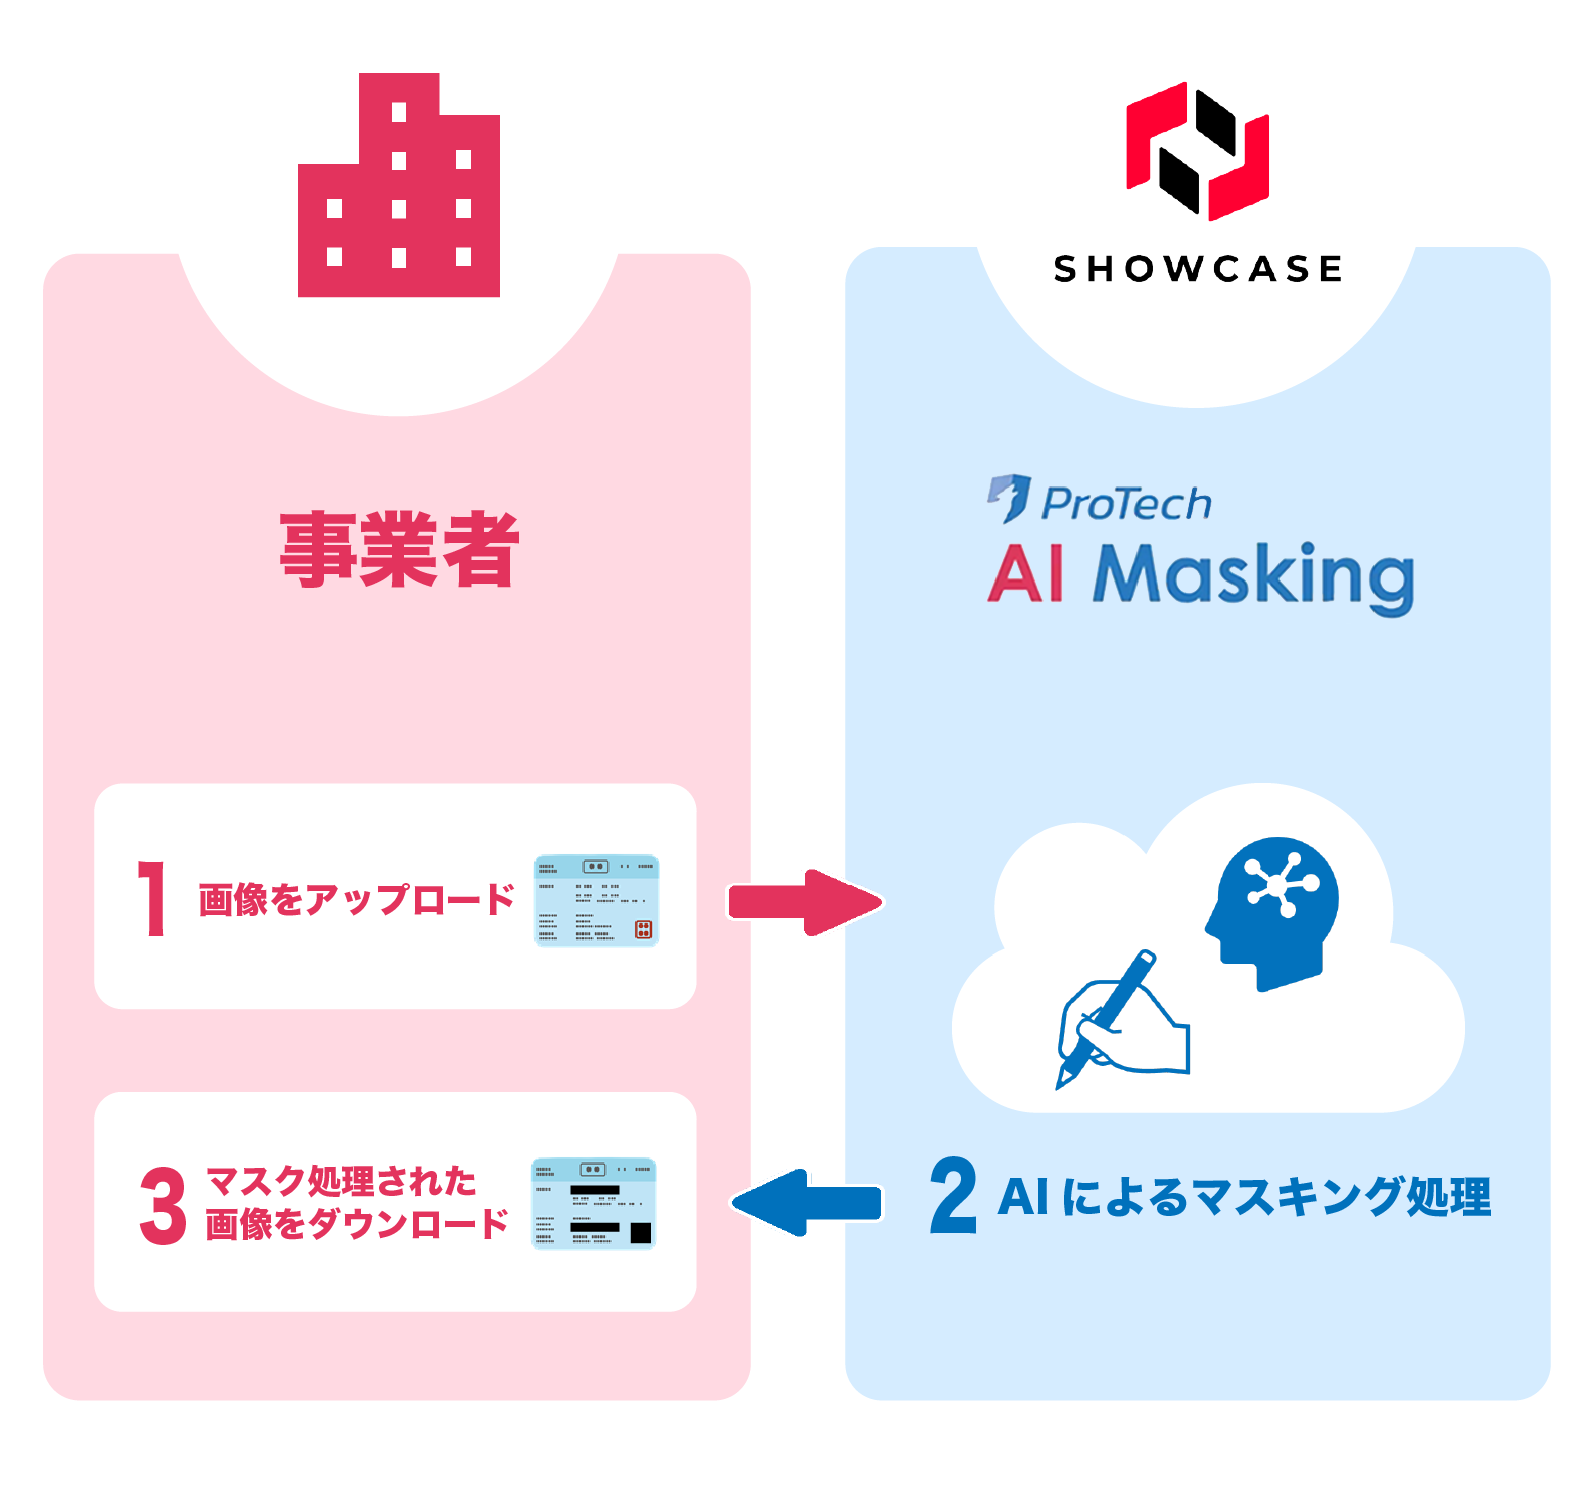 「ProTech AI Masking」の仕組み